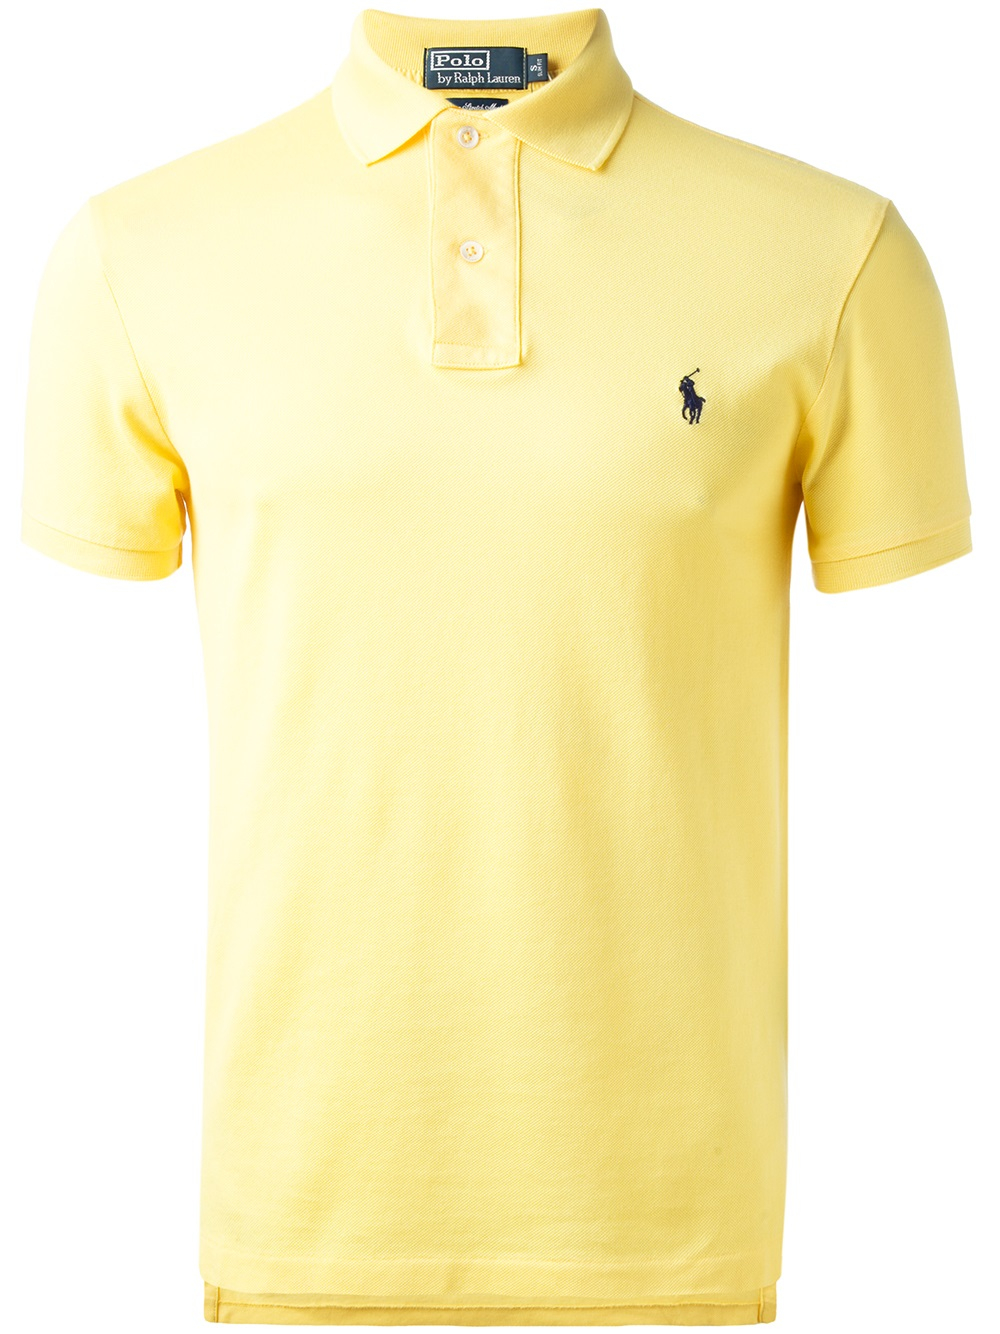 mens yellow ralph lauren polo shirt